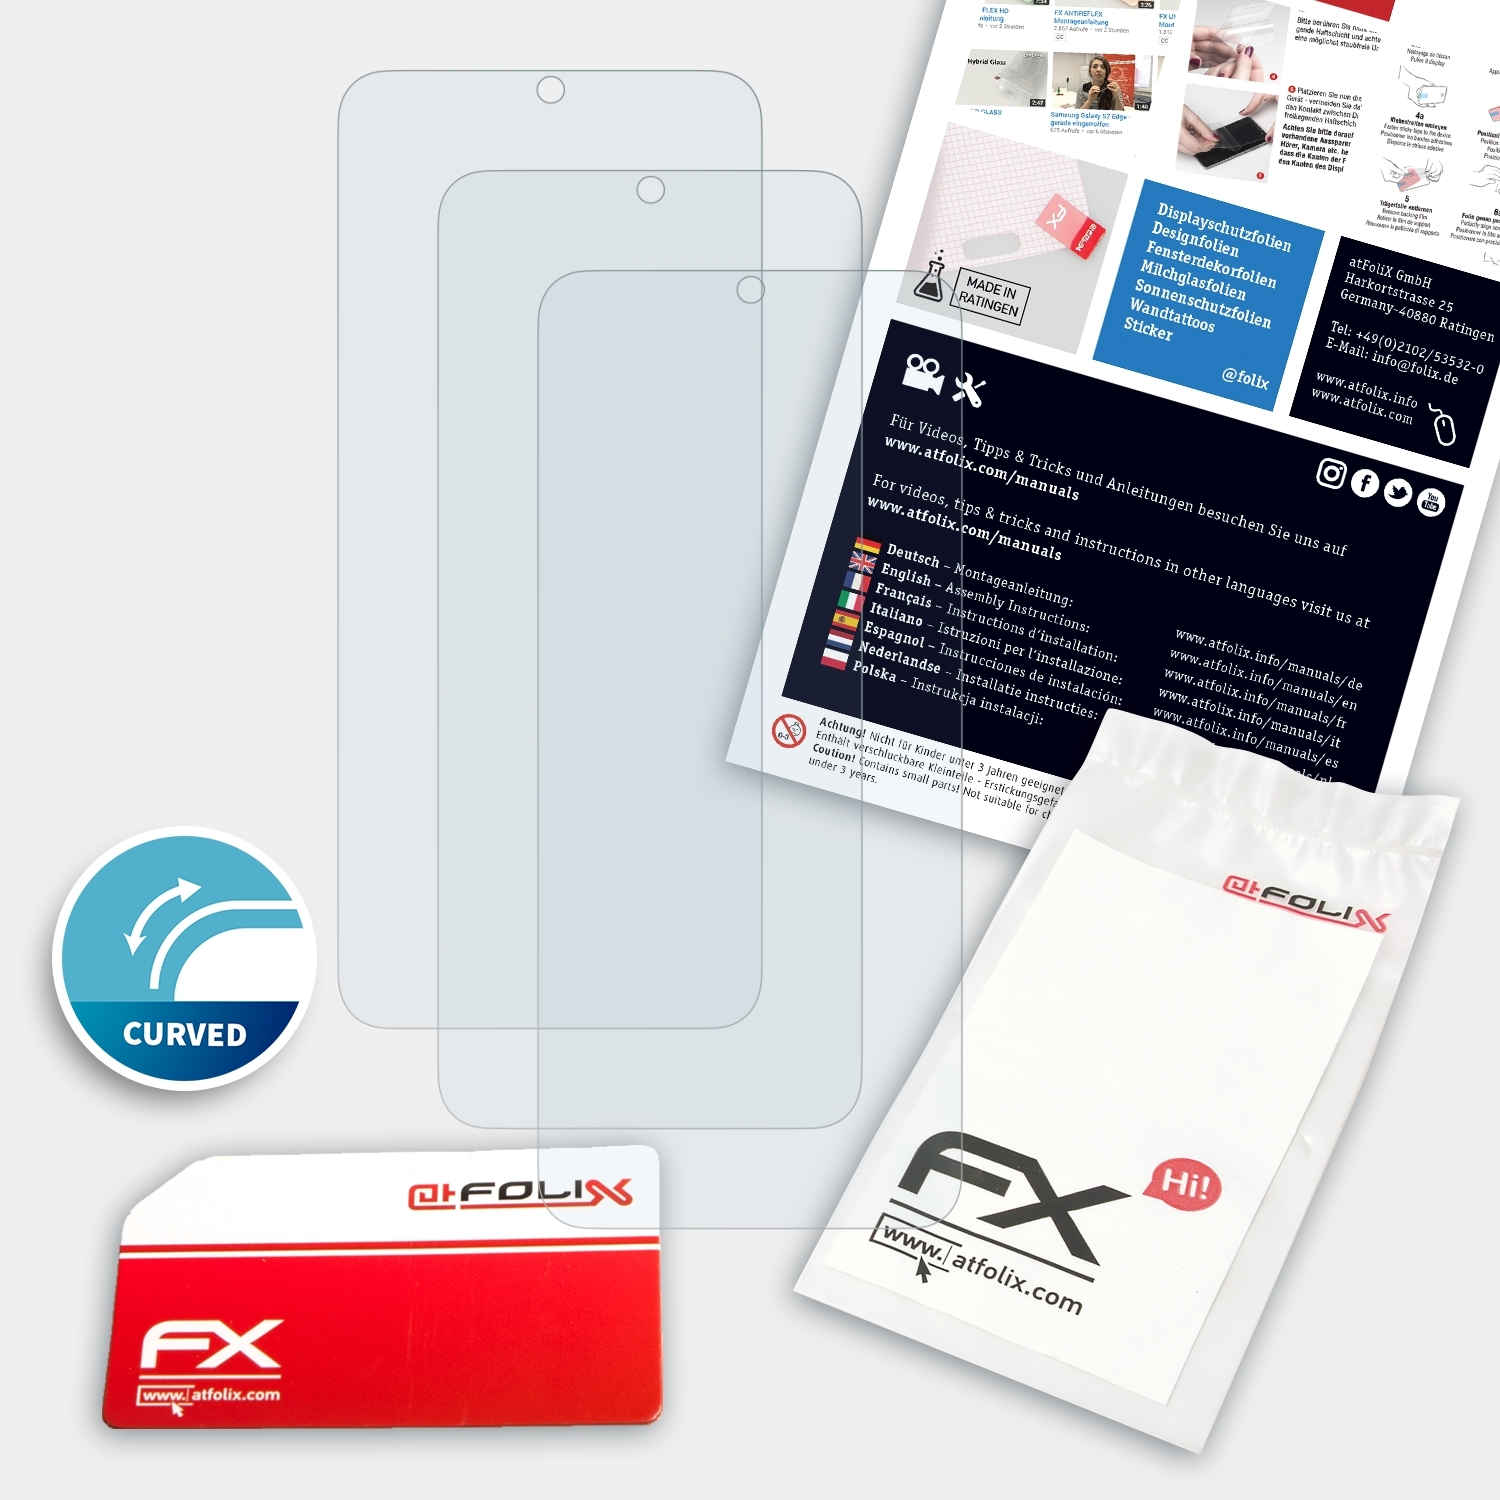 ATFOLIX 3x FX-ActiFleX Displayschutz(für (Casefit)) Galaxy Samsung S20